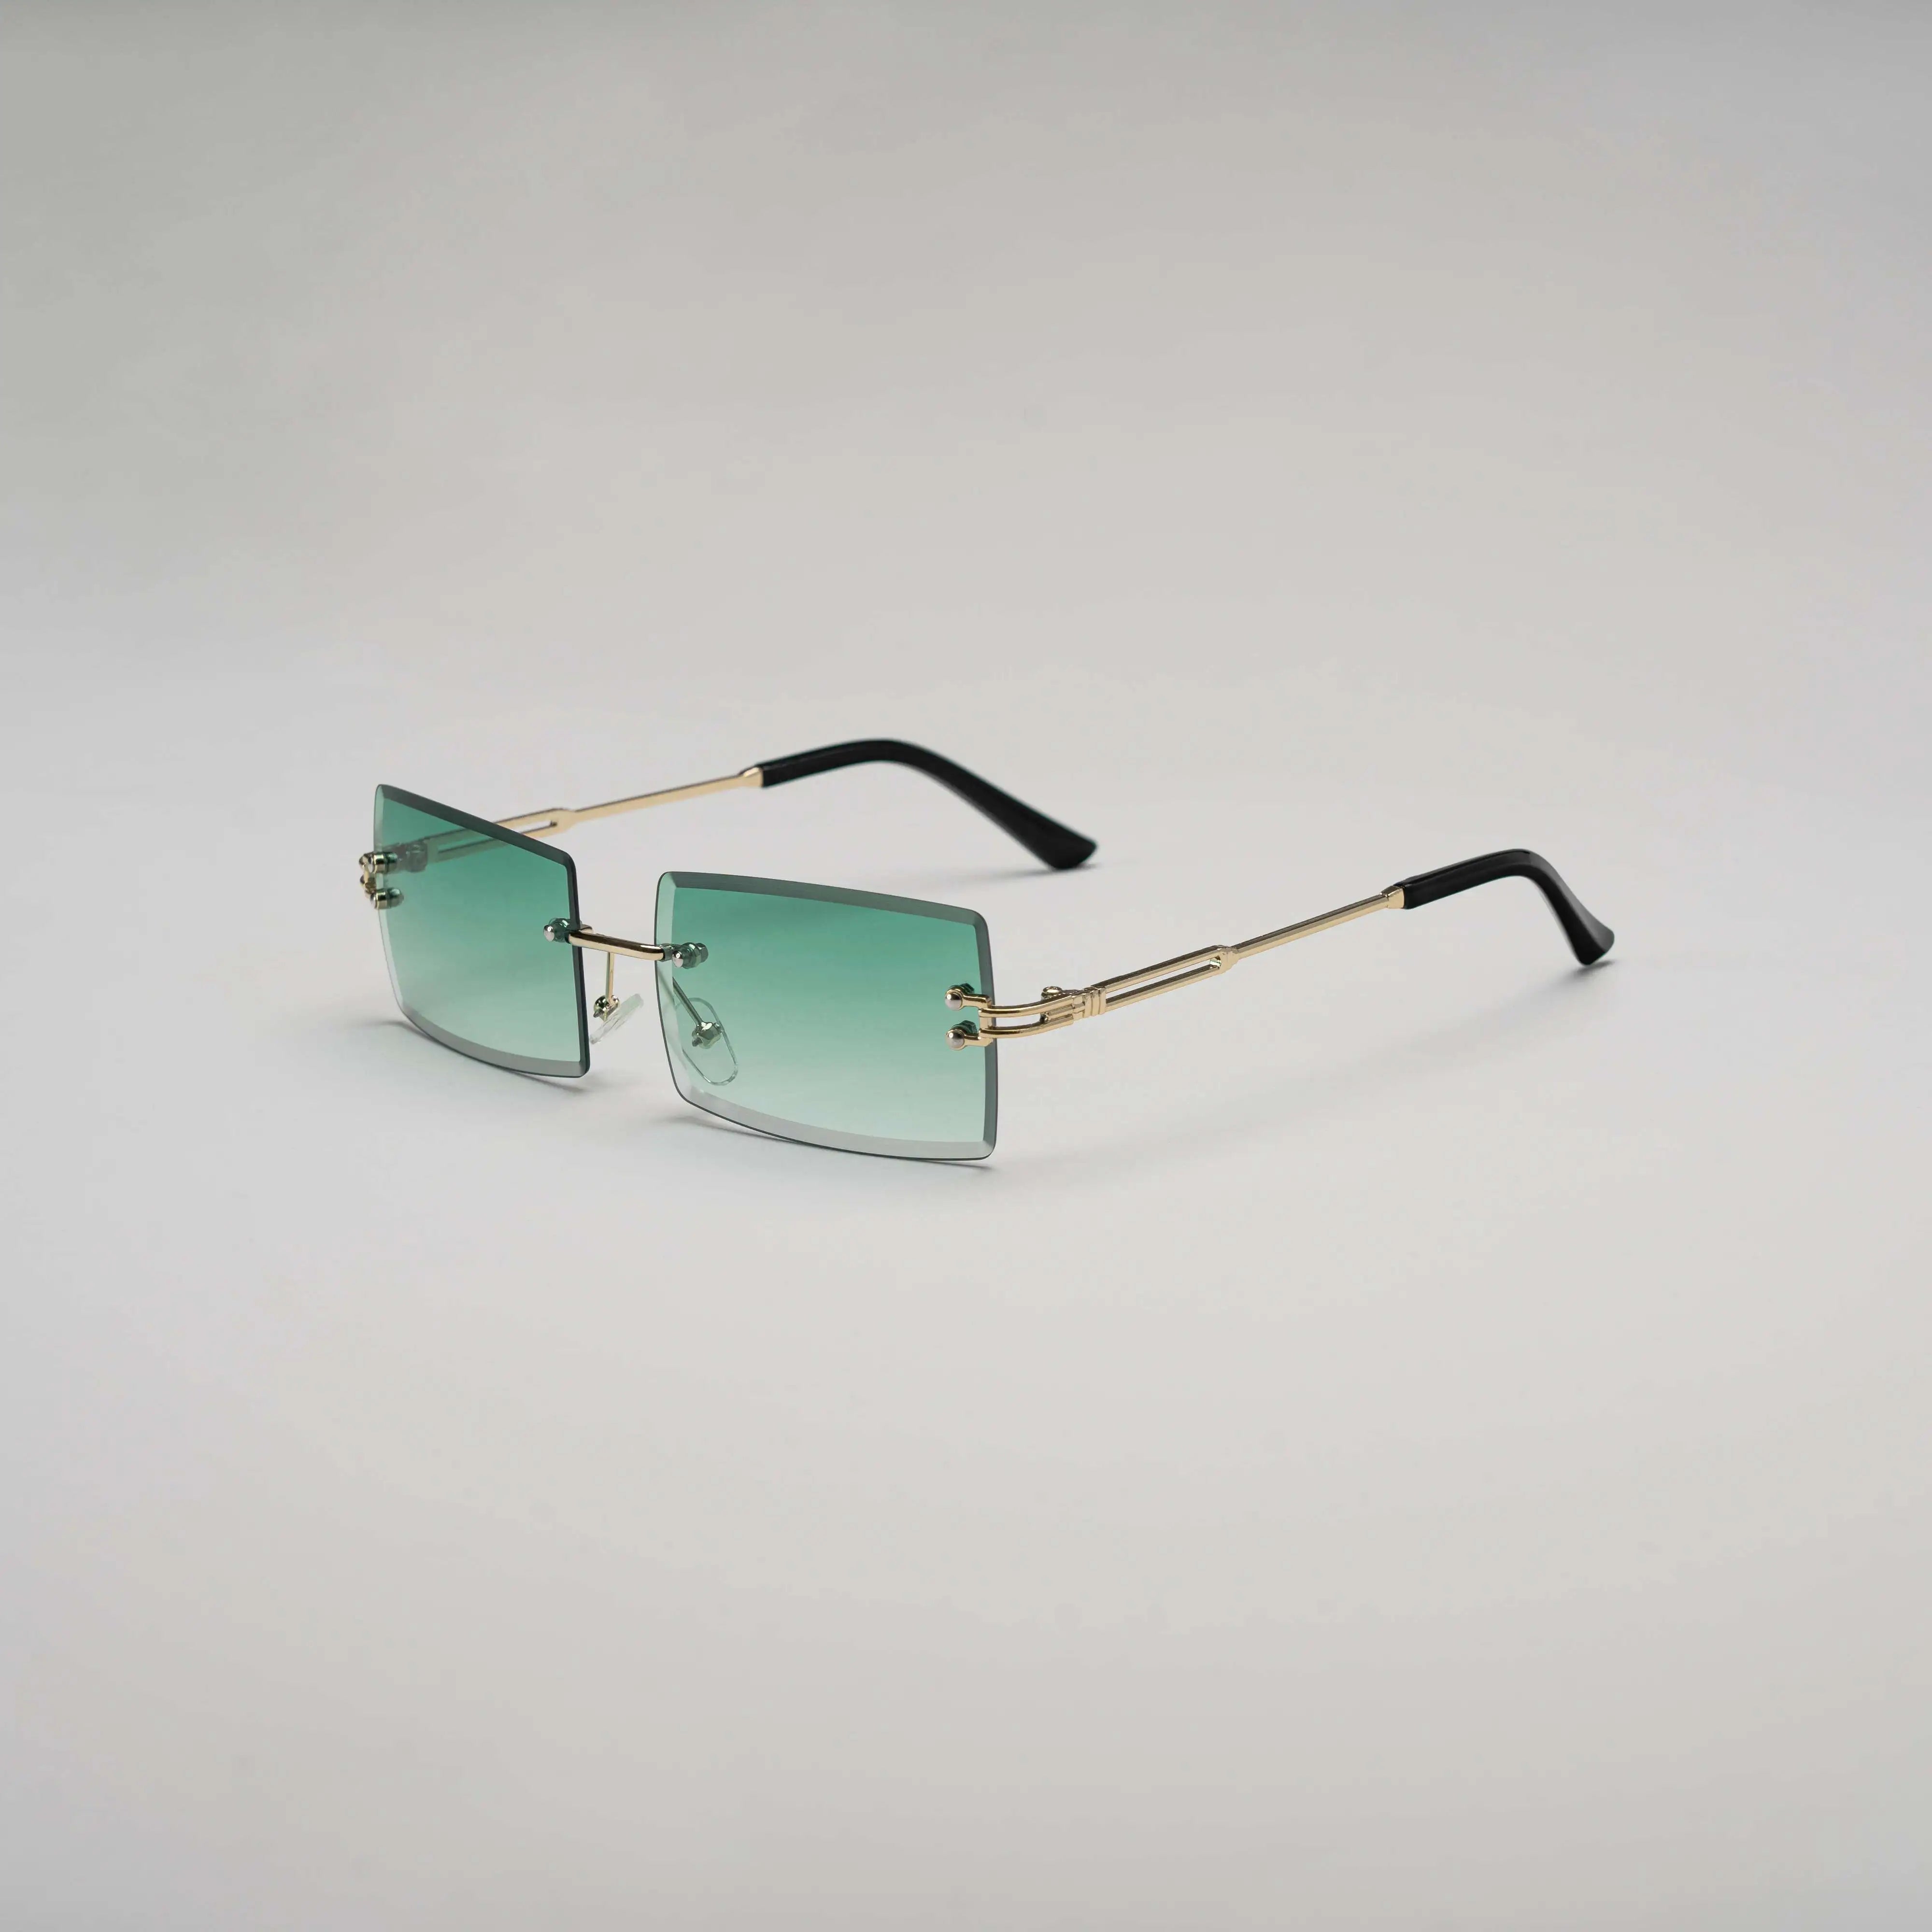 'E1' Rimless Sunglasses in Green & Gold